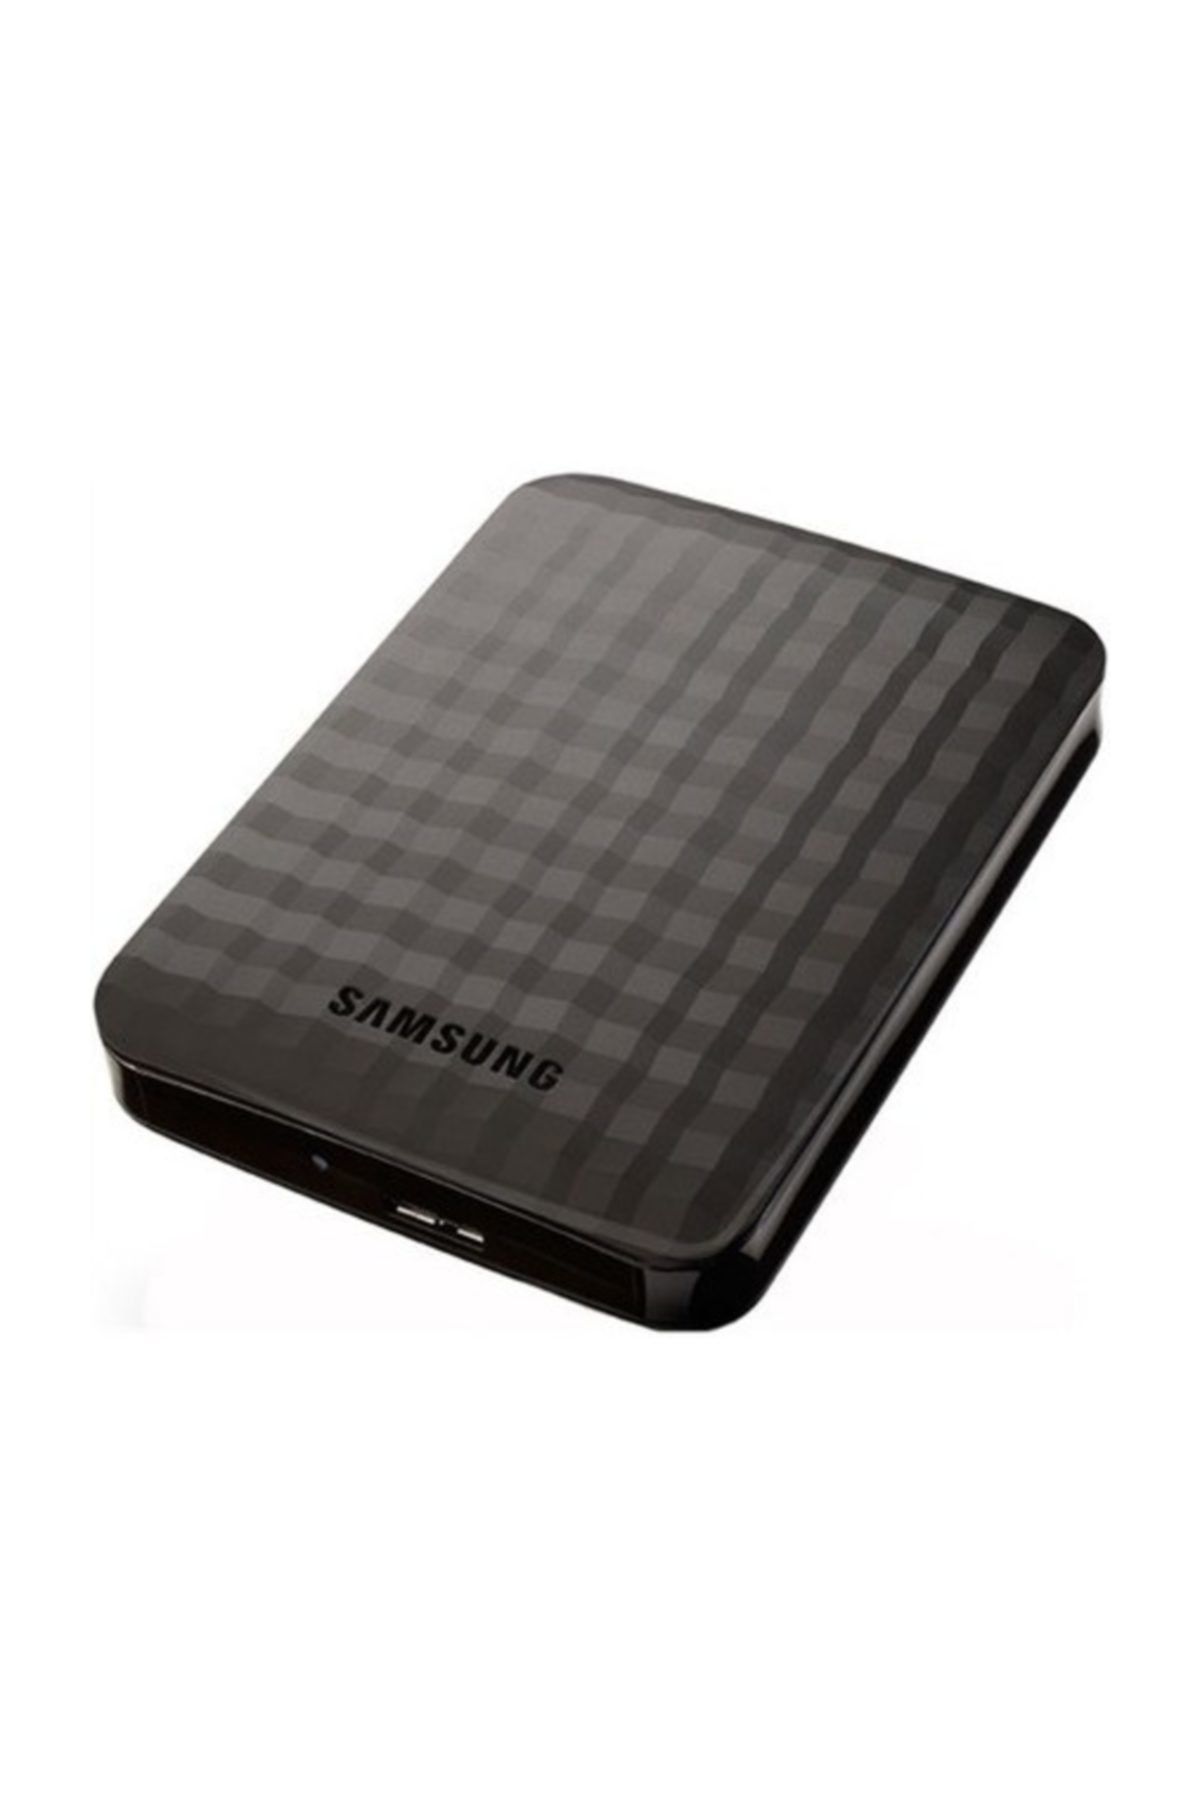 Samsung M3 320 2.5 Inc Usb 3.0 Harici Taşınabilir Hdd